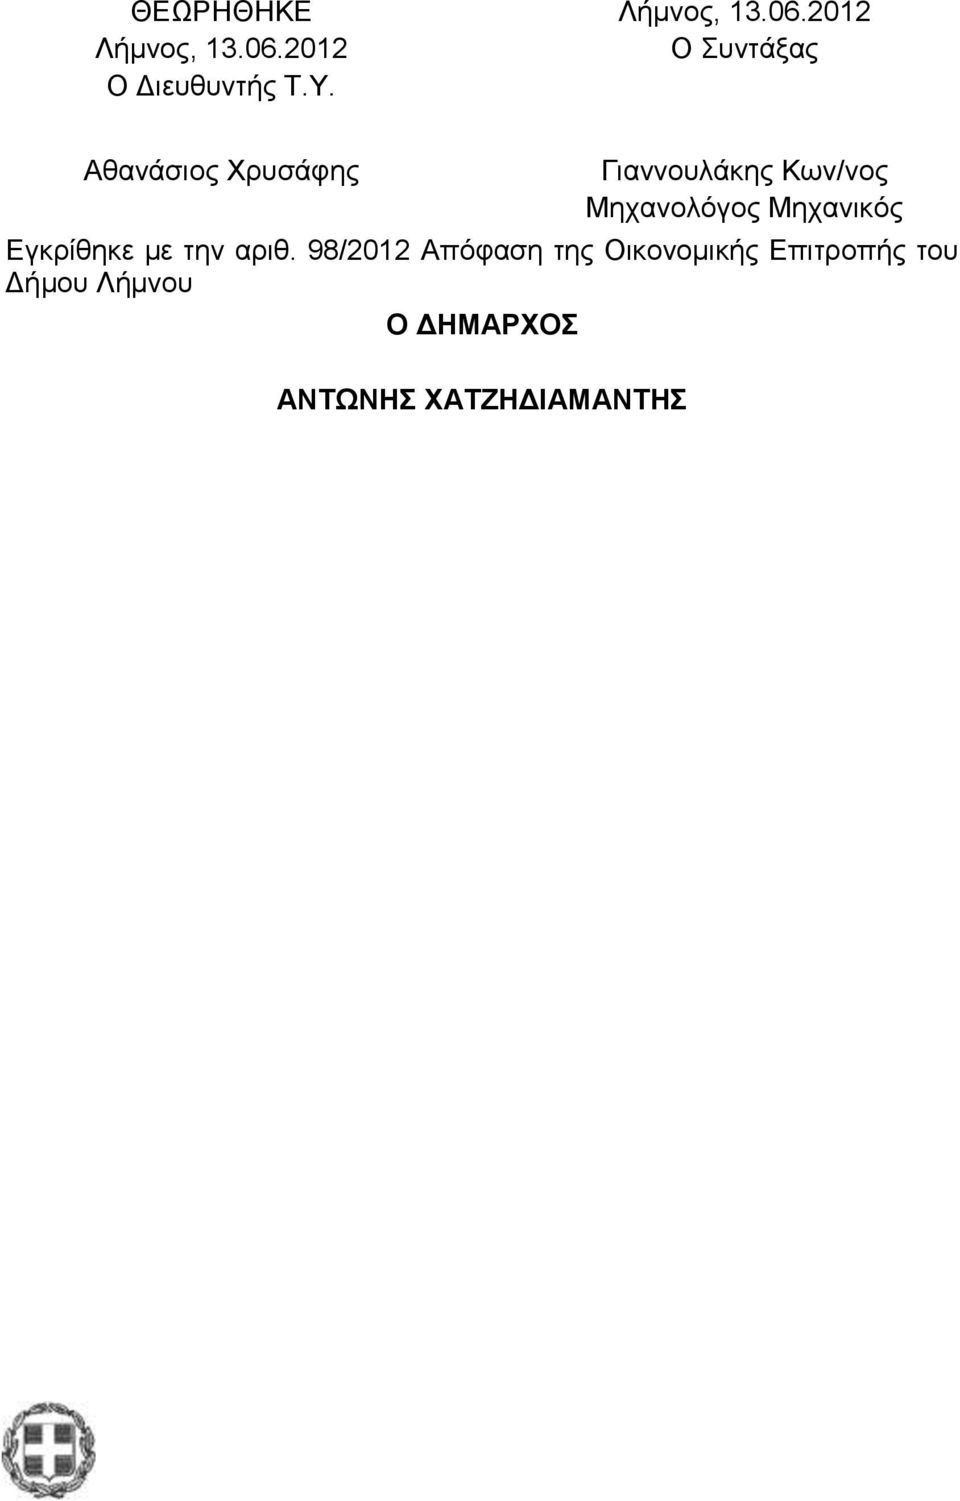 2012 Ο Συντάξας Αθανάσιος Χρυσάφης Γιαννουλάκης Κων/νος Μηχανολόγος Μηχανικός Εγκρίθηκε με την